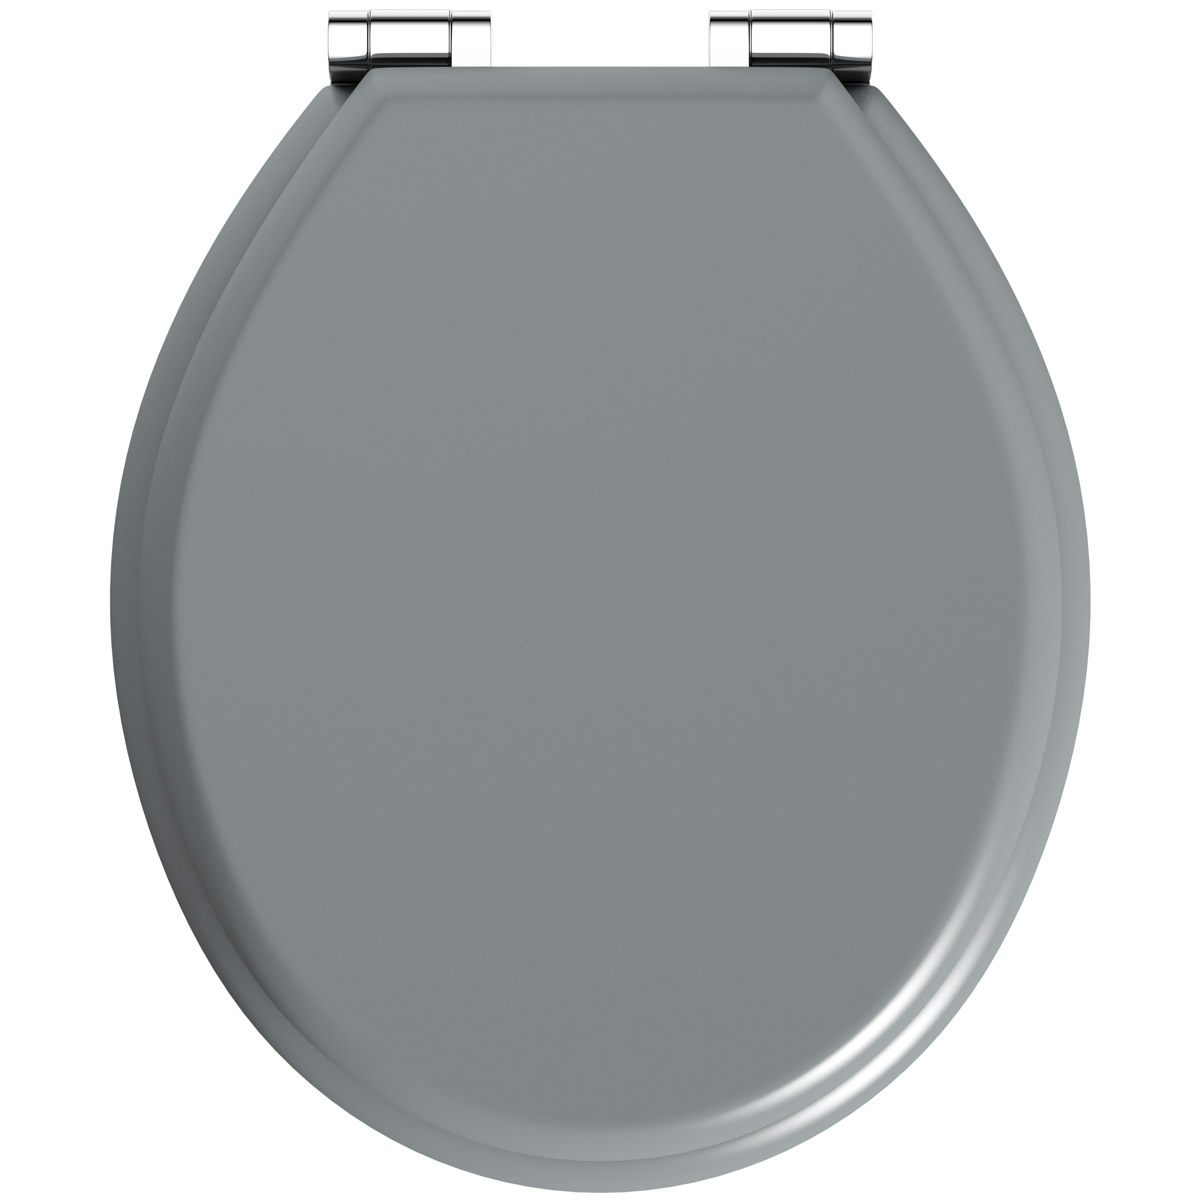 grey toilet seat